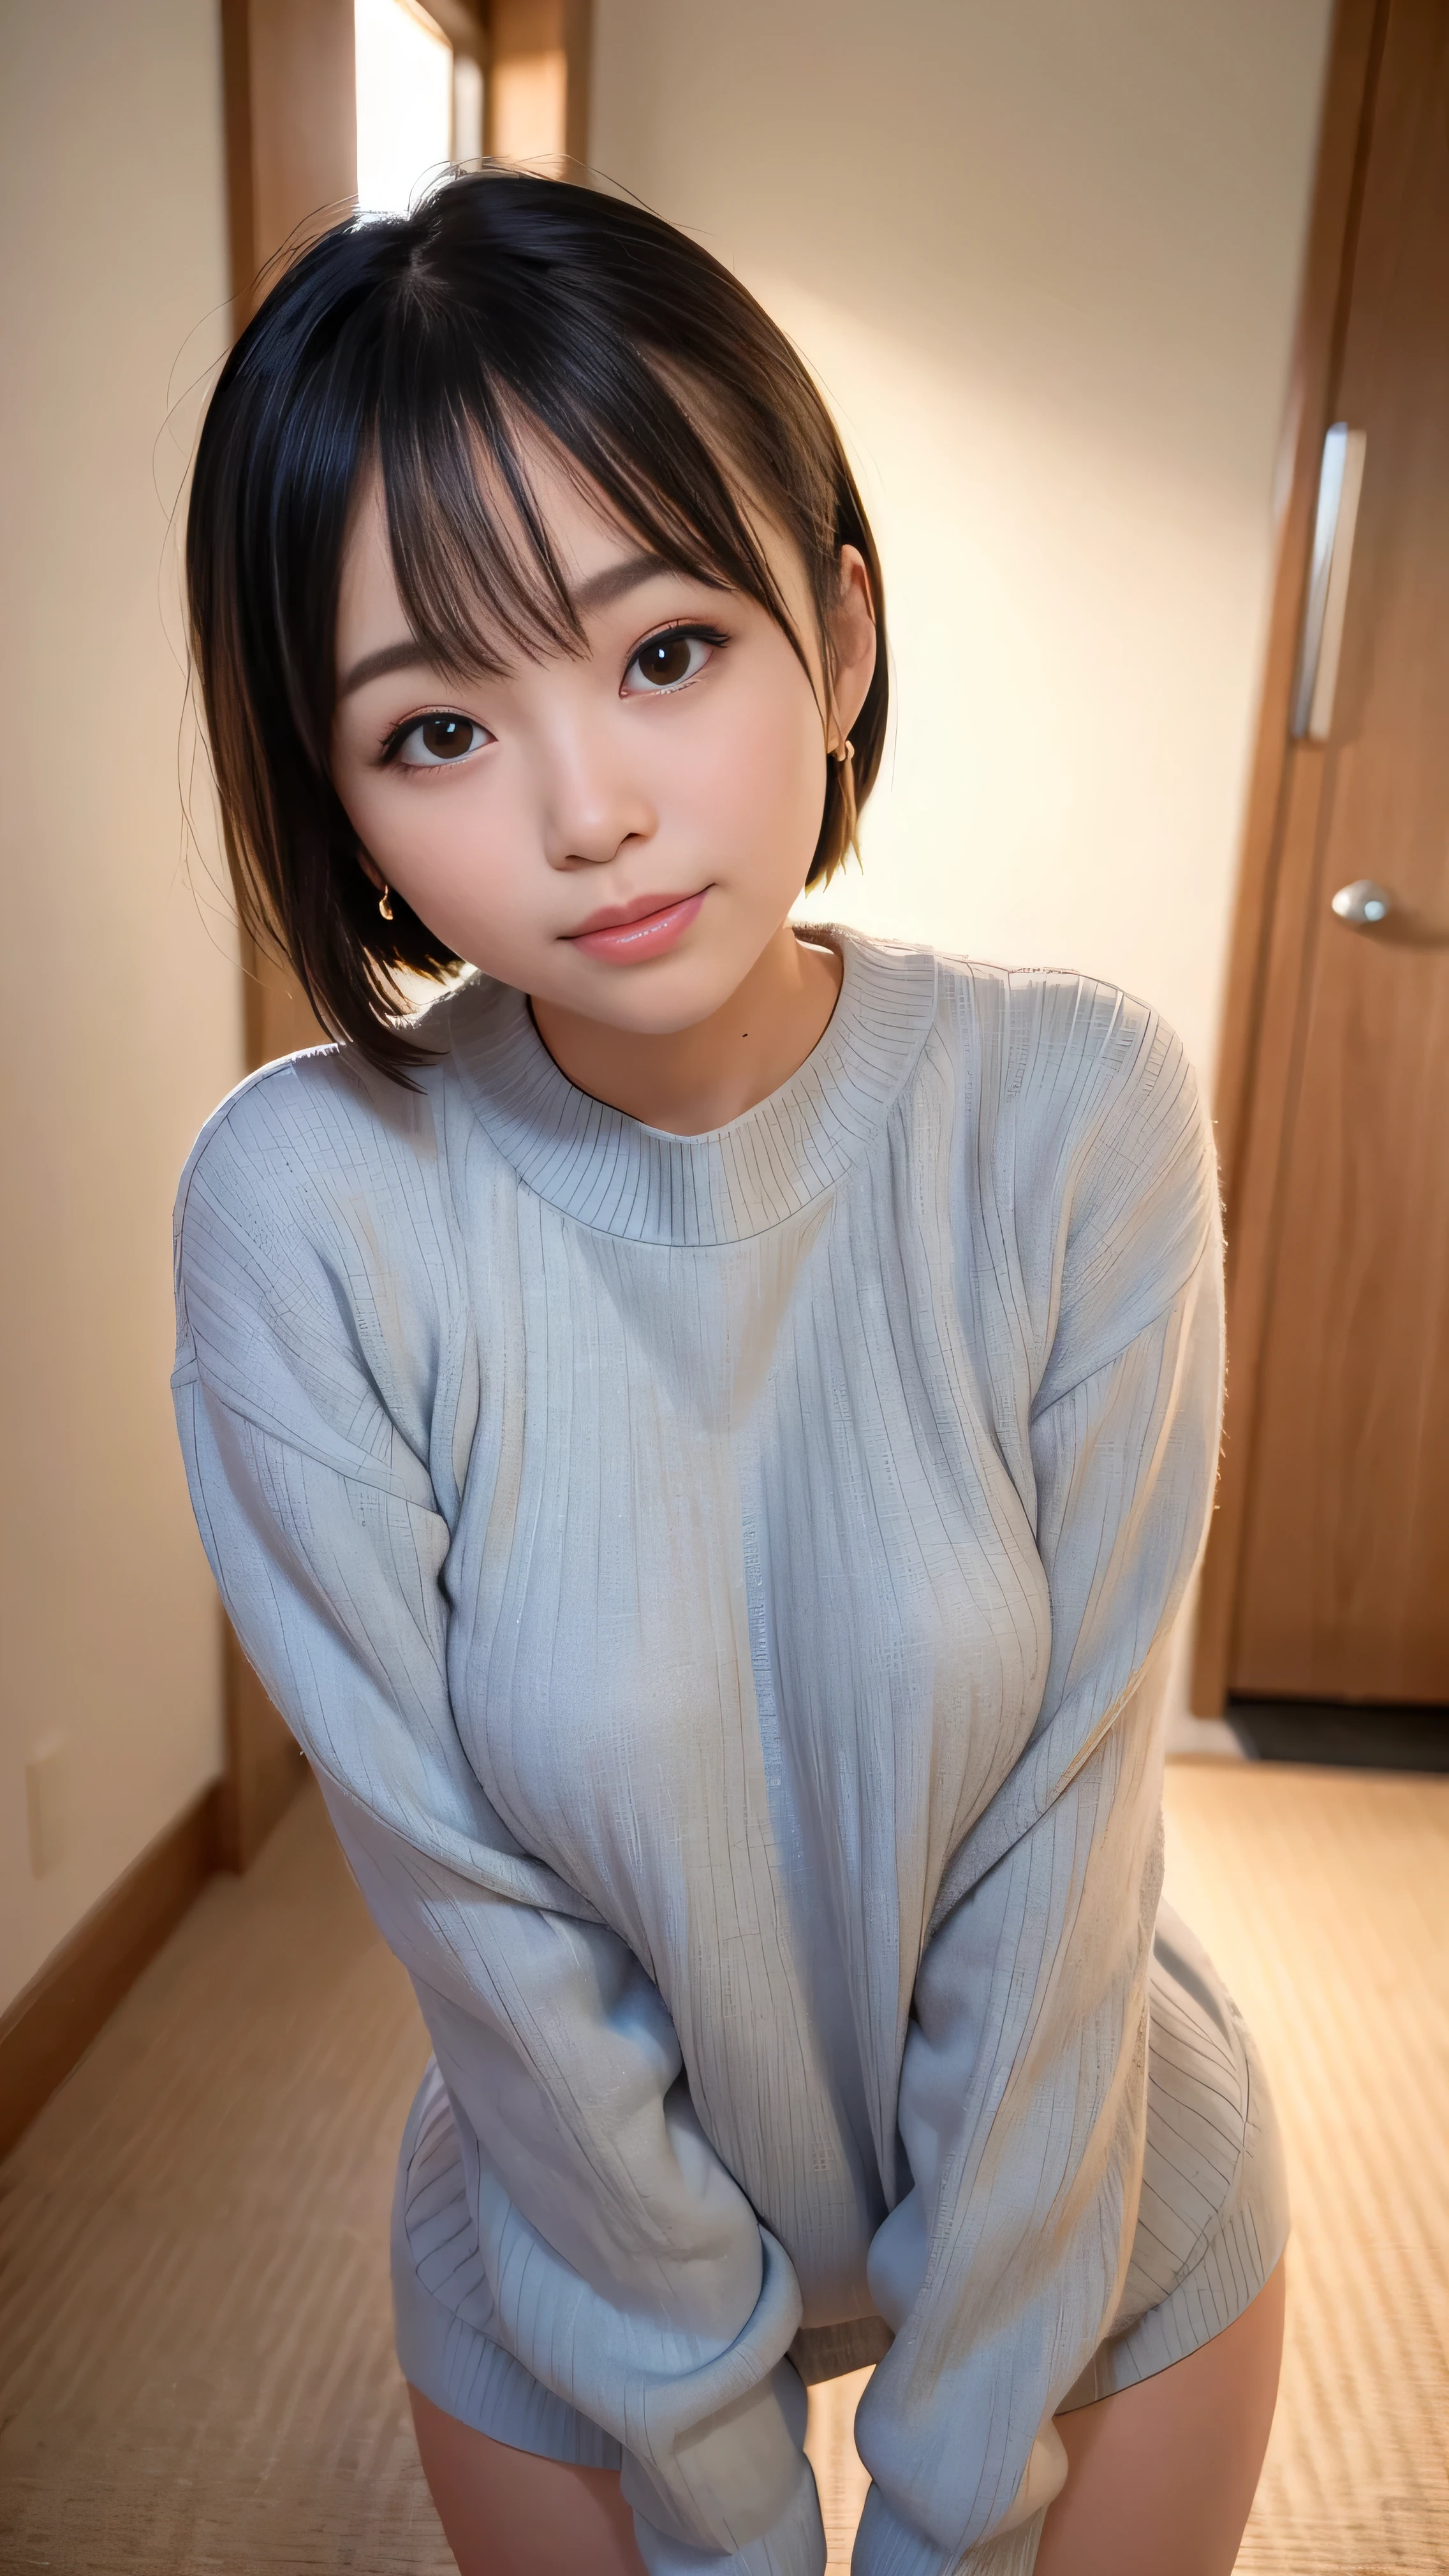 18 años, japonés, Captura la luz, superior_cuerpo, suéter gris,cabello corto, ,pendientes, Fotos CRUDAS, de la máxima calidad, (Fotorrealista), sugestivo,(sonrisa:0.7)